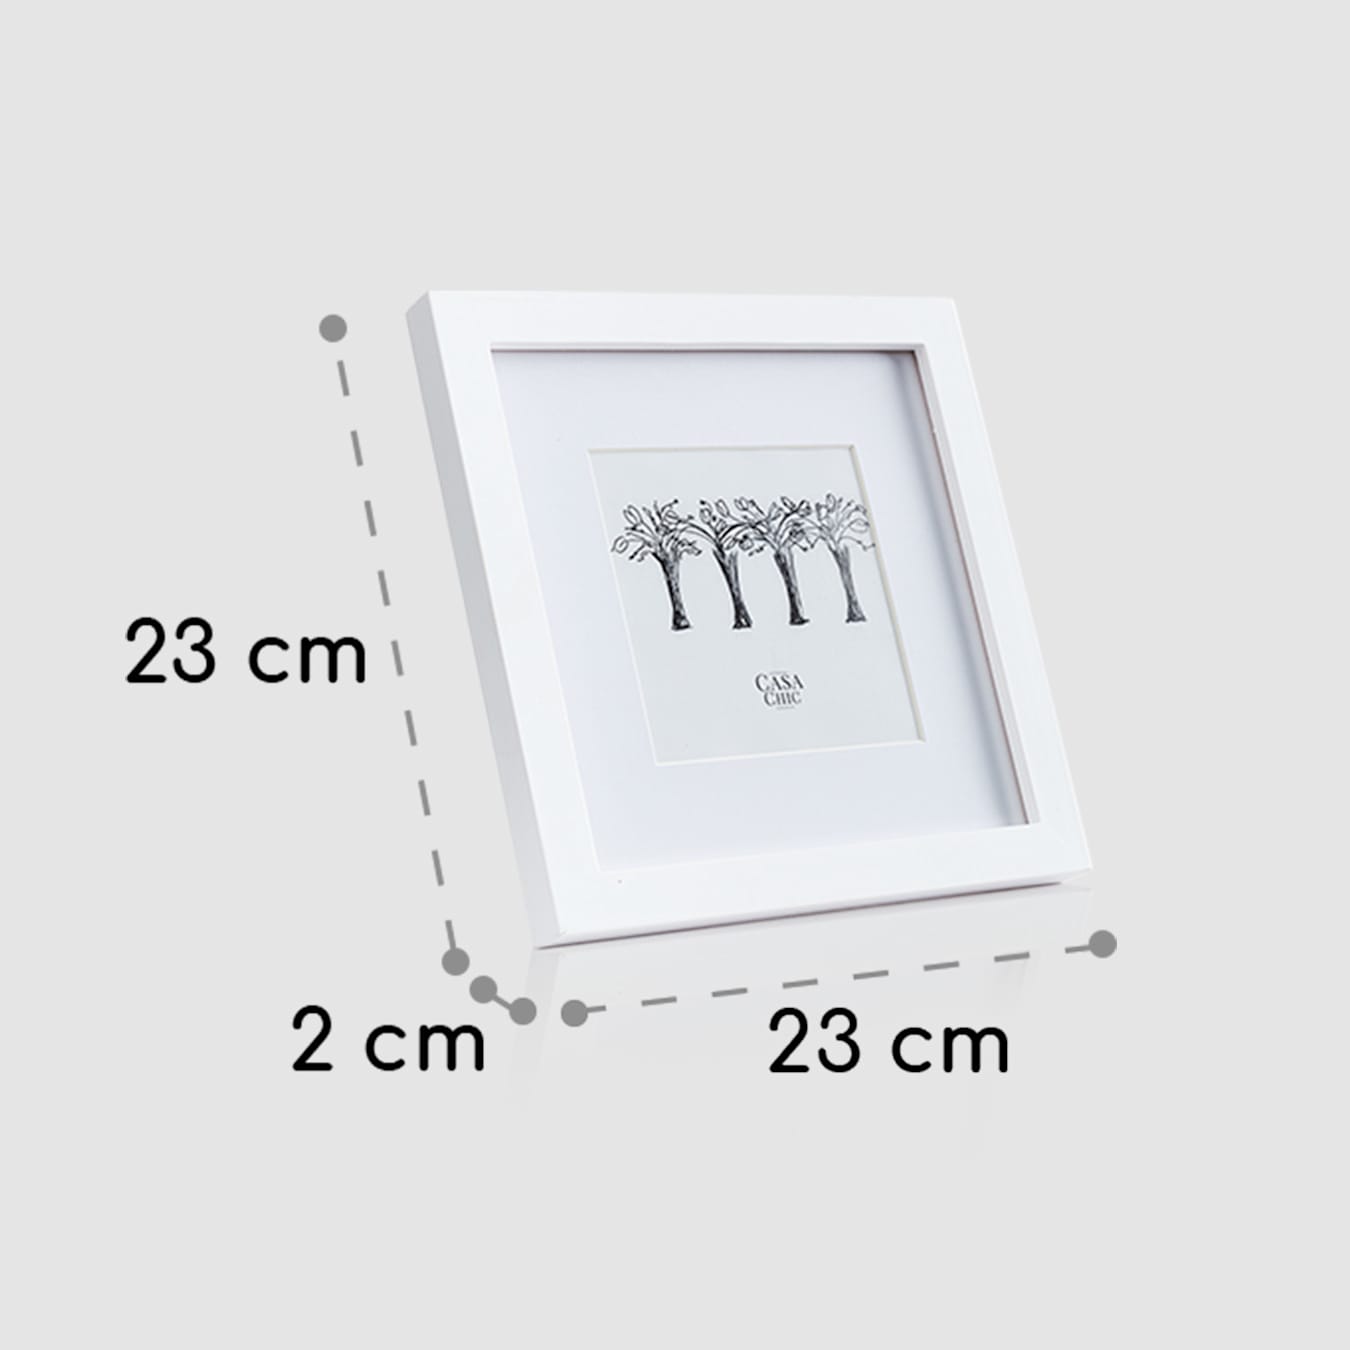 Cornice Clapton, Quadrata, Dimensioni: 23 x 23 x 2 cm, Per immagini da 20  x 20 cm, Con passepartout per foto da 12 x 12 cm, Frontale in vetro, Da  appoggiare o appendere alla parete